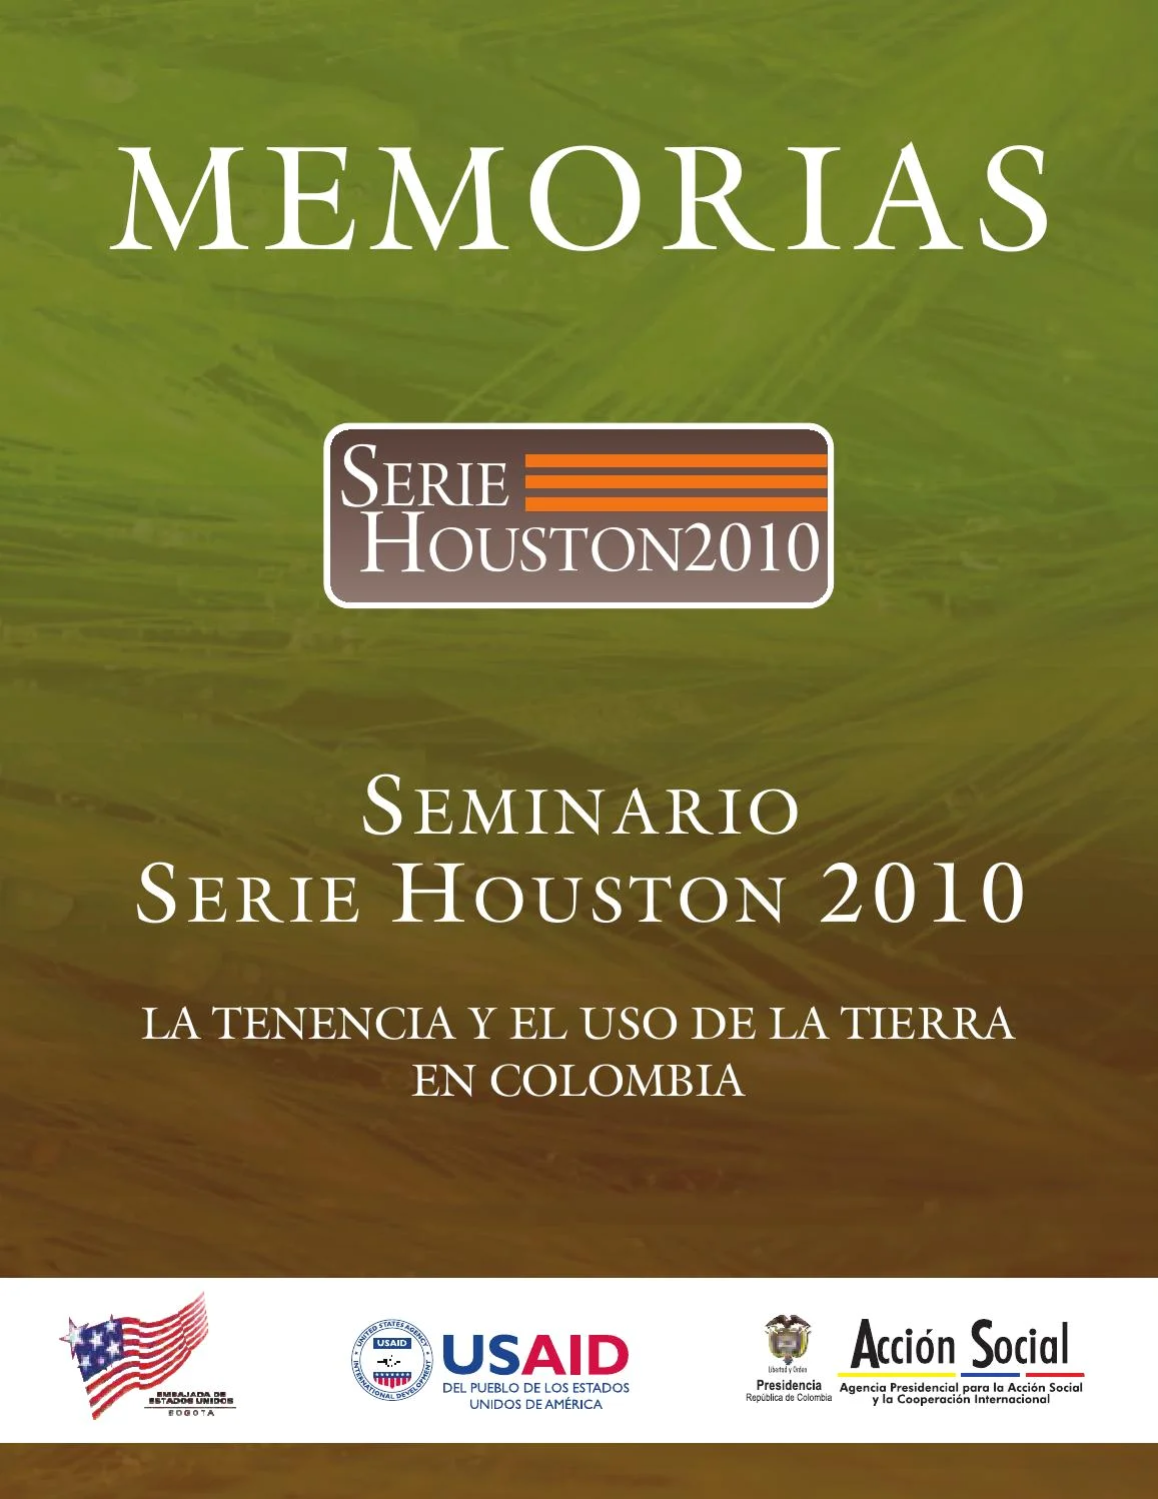 Seminario Serie Houston 2010 La tenencia y el uso de la tierra en Colombia